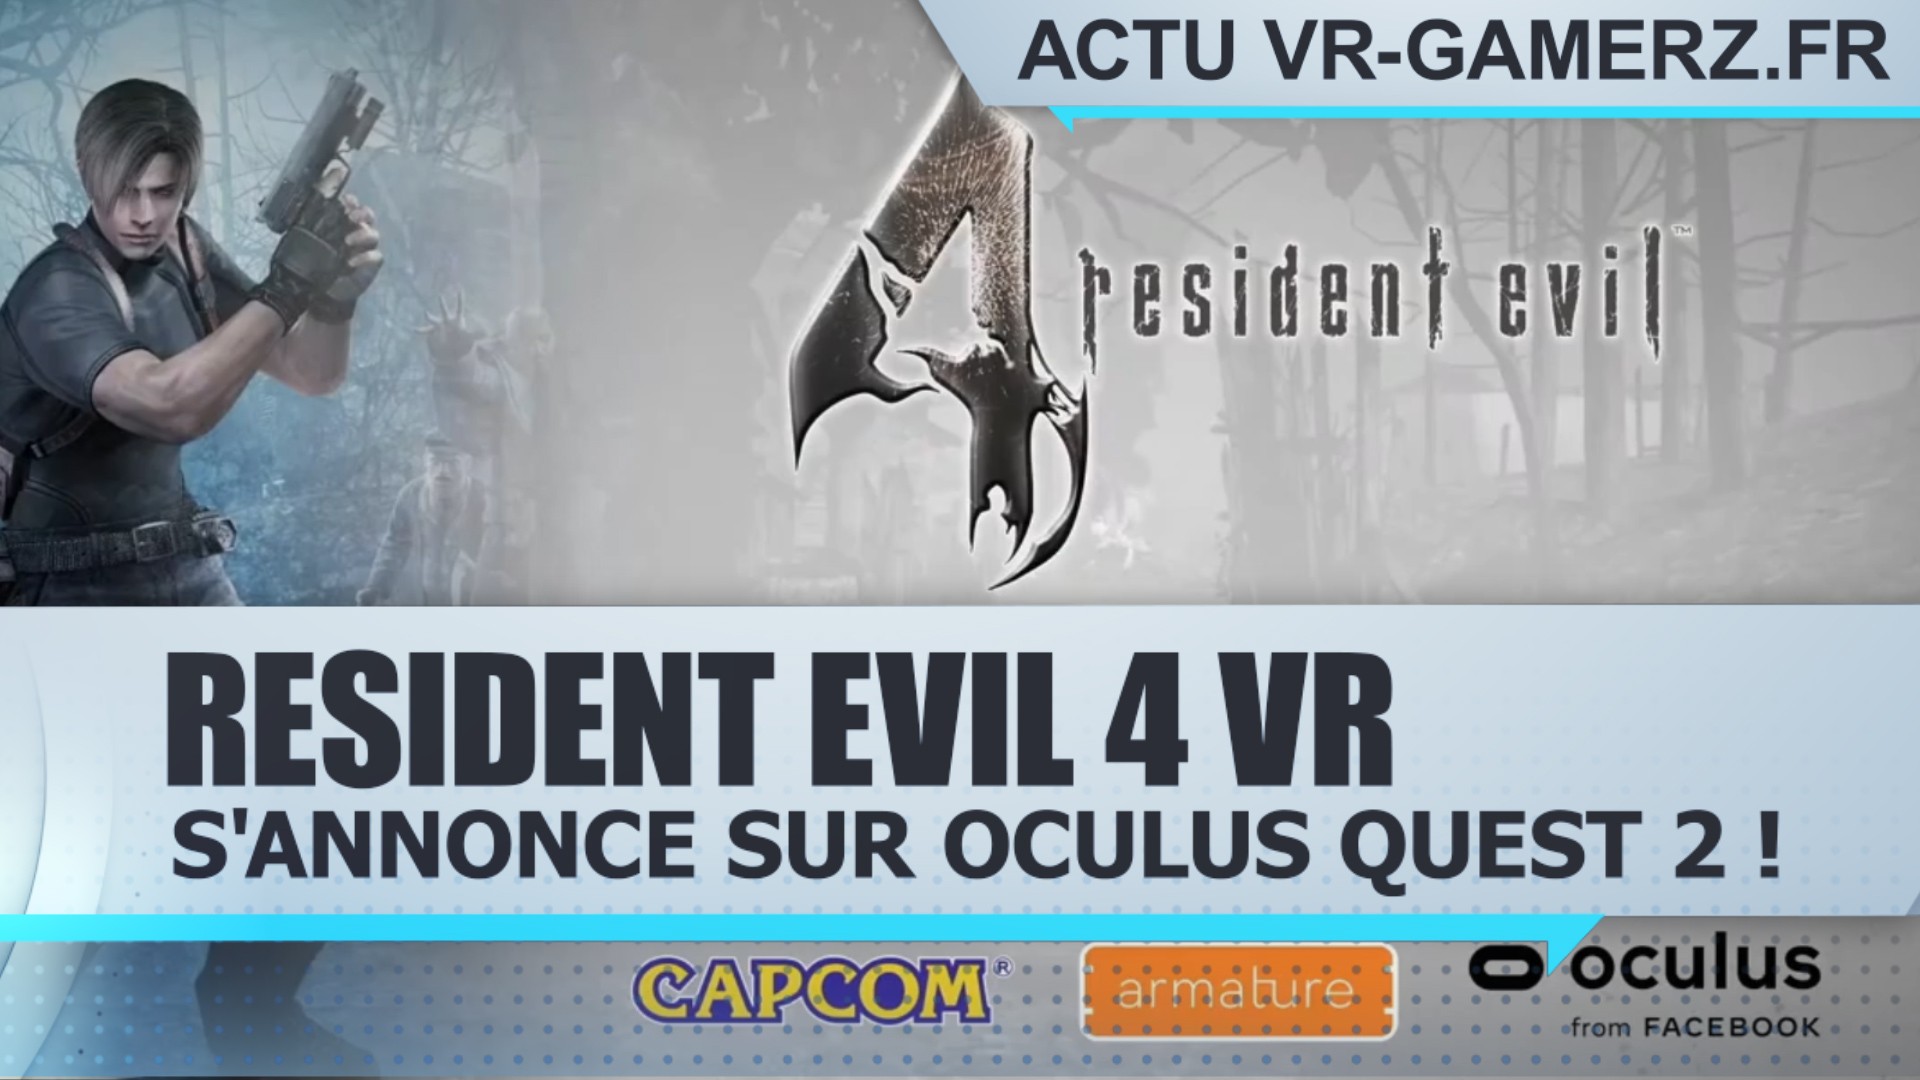 Resident Evil 4 VR s’annonce sur Oculus quest 2 !